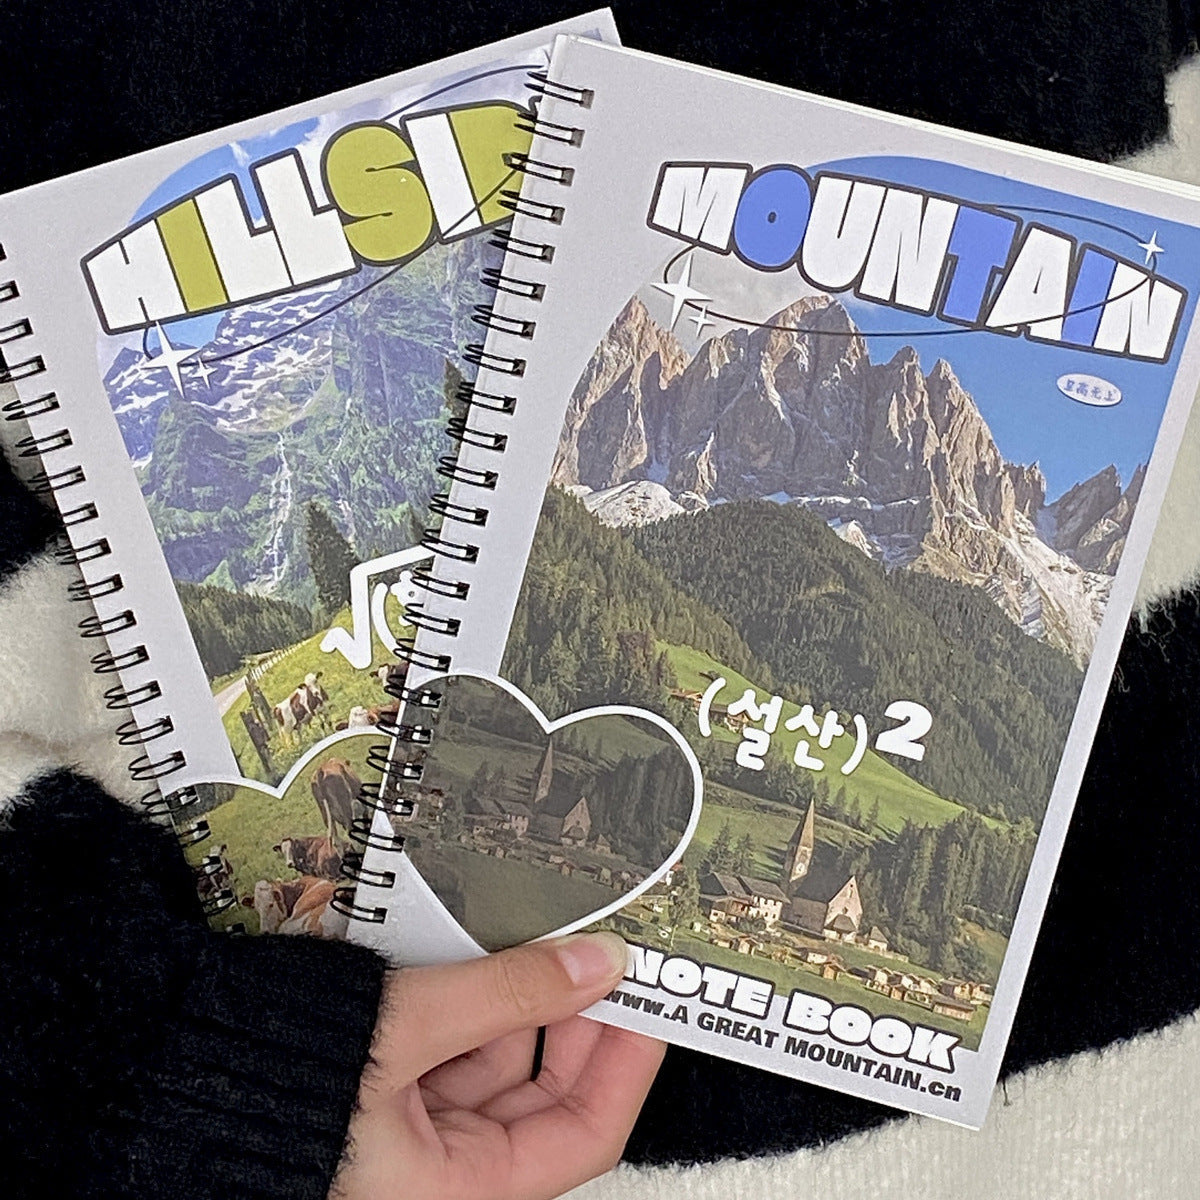 50sheet Ins Notebook Creative Cute Cartoon Bear Kitten Horizontal Line Korean Style Coil A5 Scrapbook Journal Student Supplies